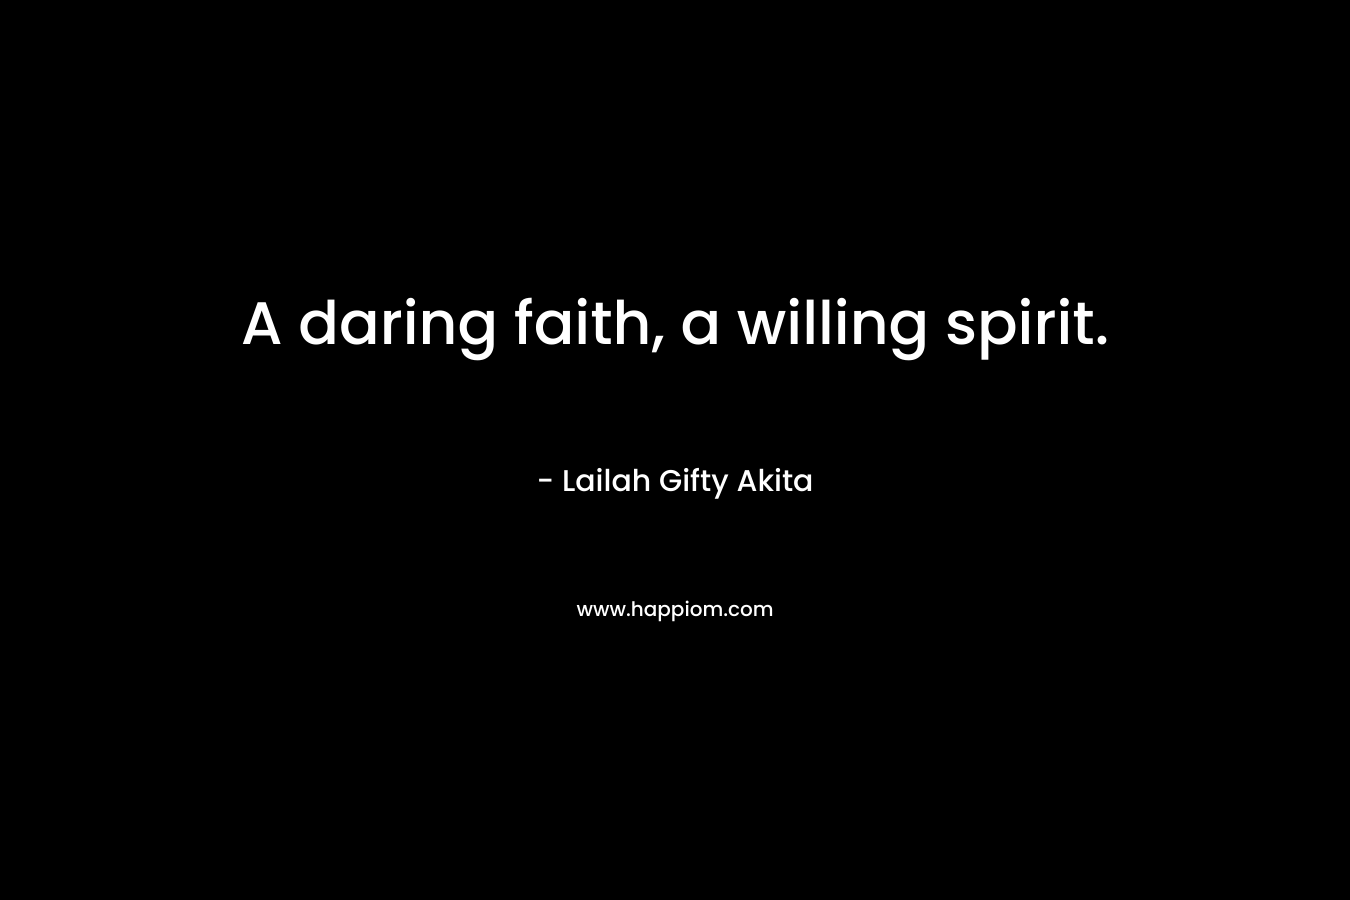 A daring faith, a willing spirit.